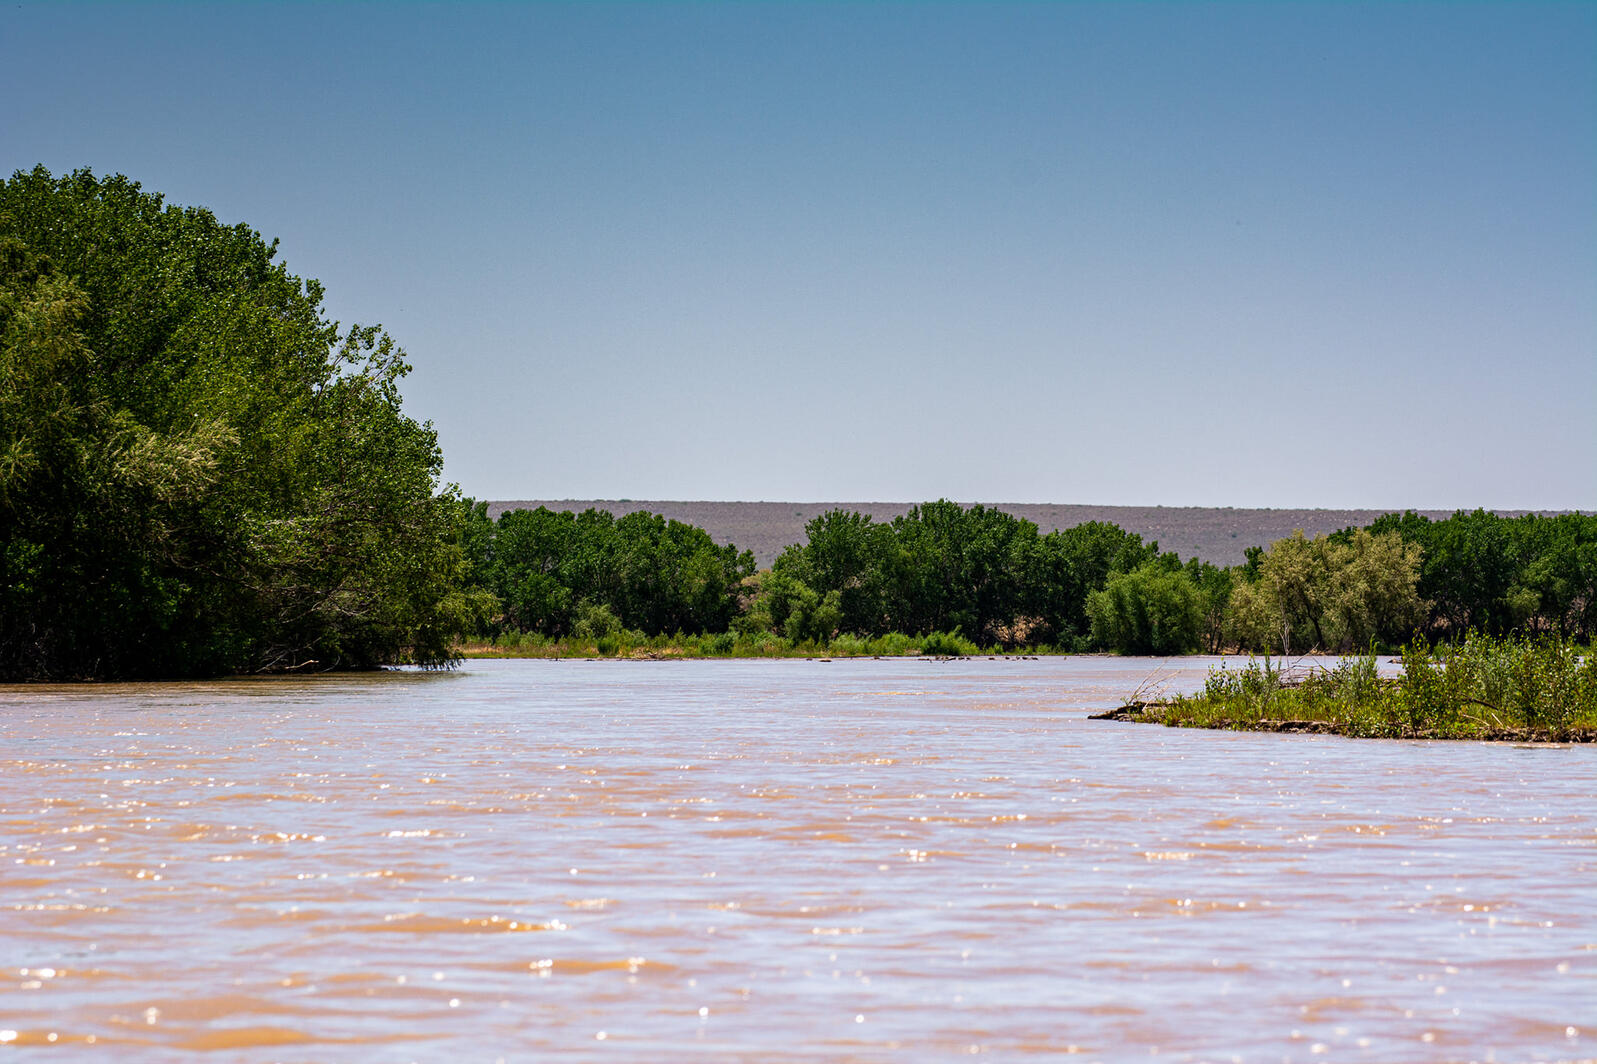 The Rio Grande at Bosque del Apache NWR